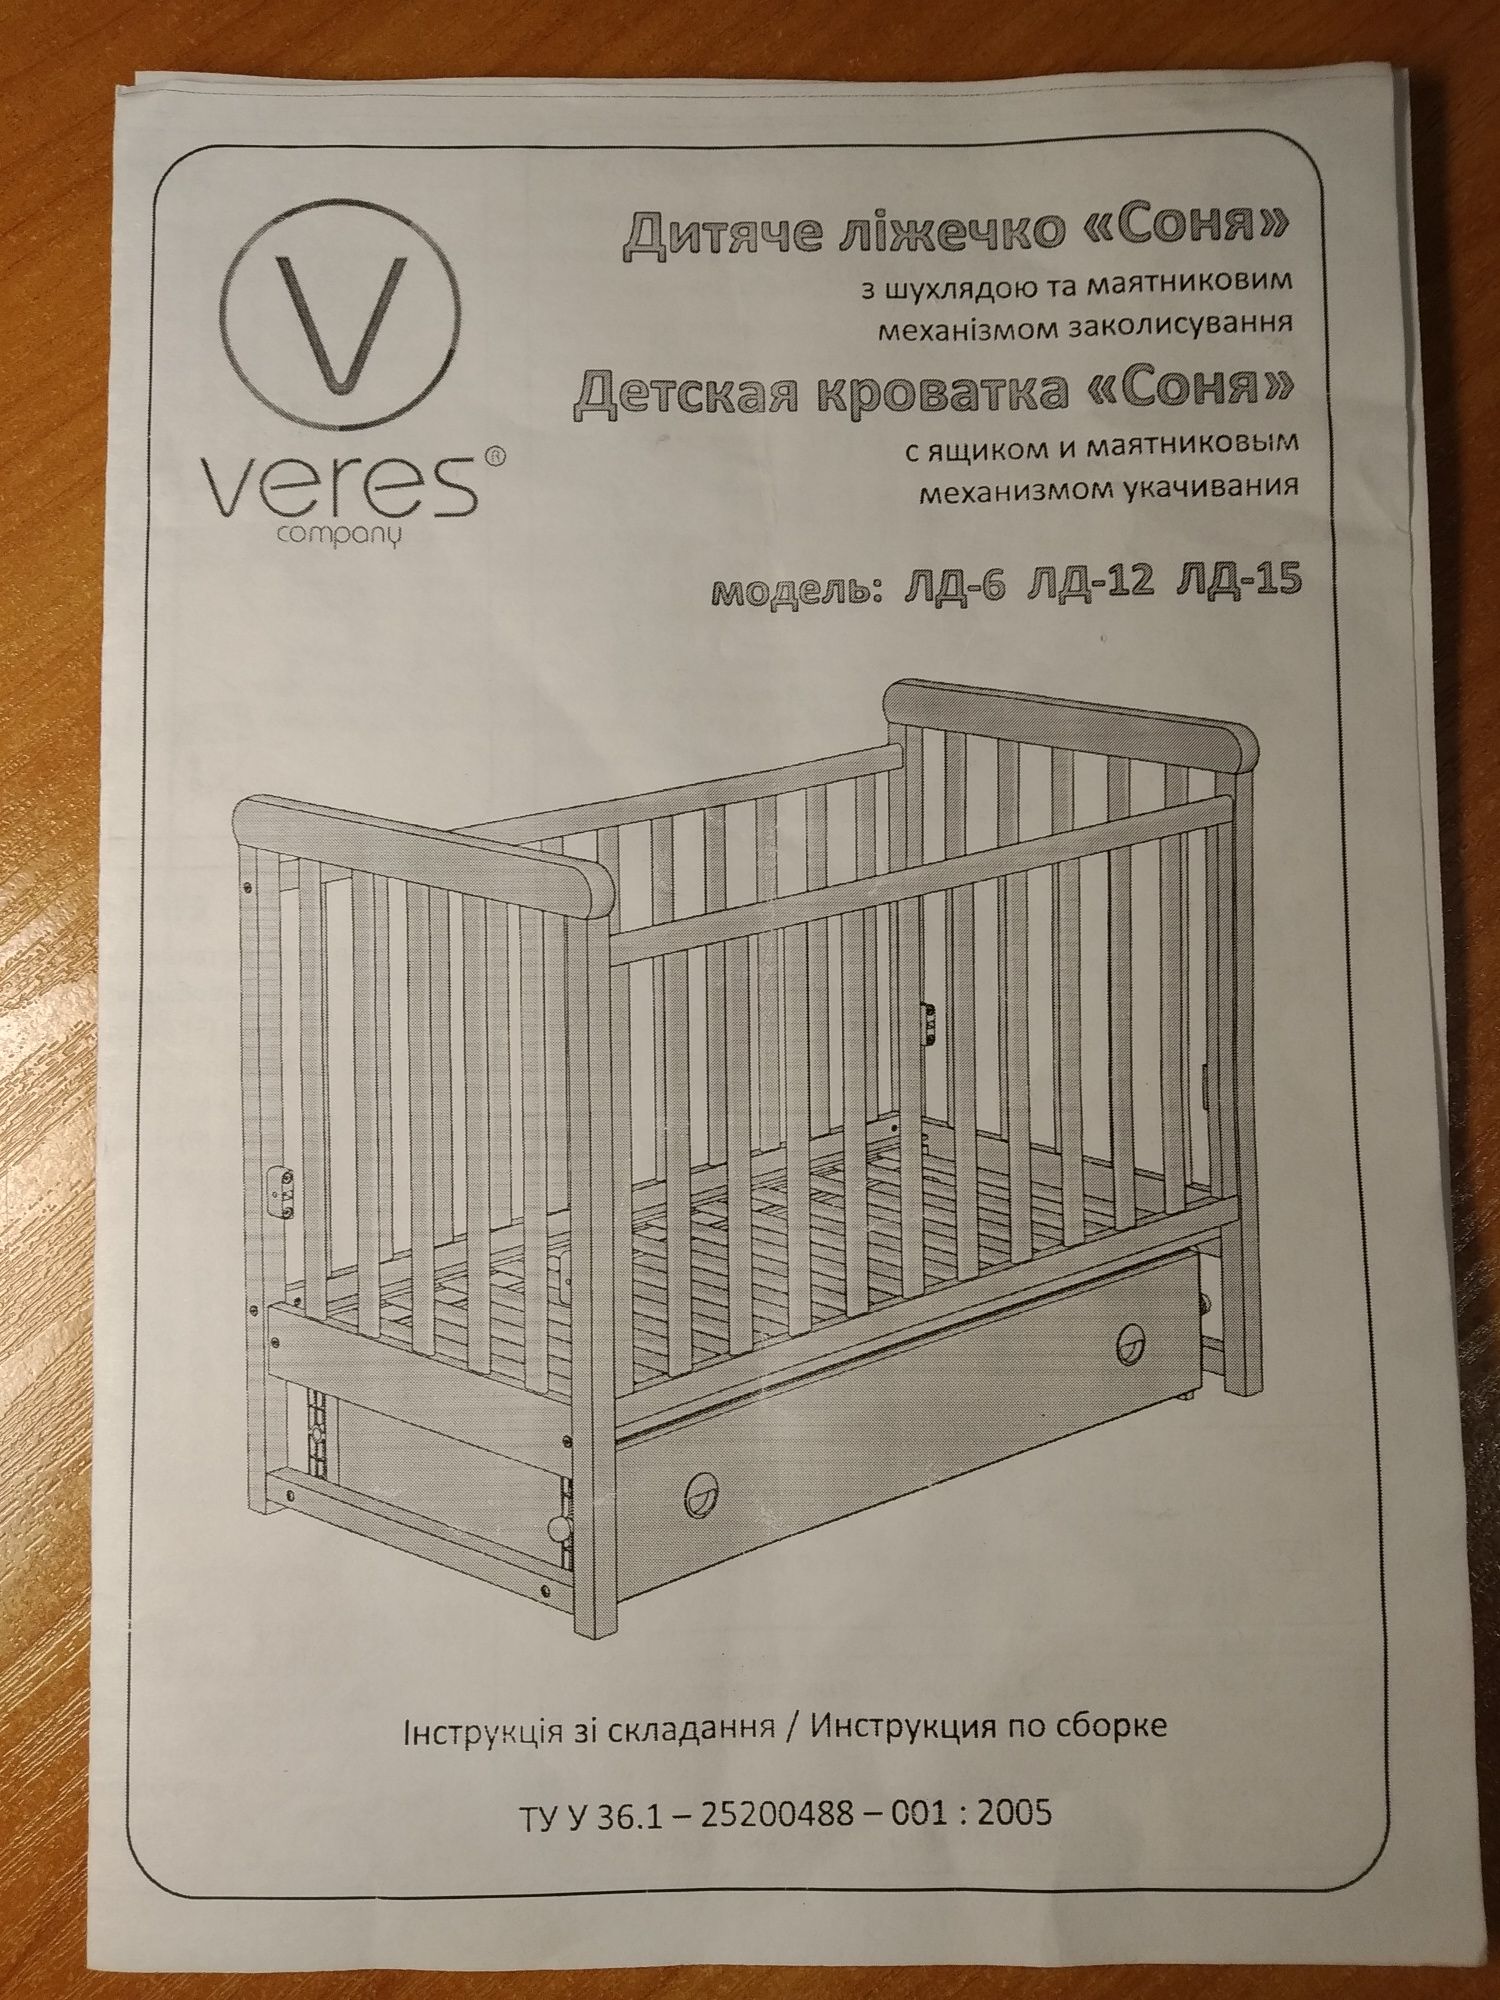 Детская кроватка "Соня" торговой марки Veres.